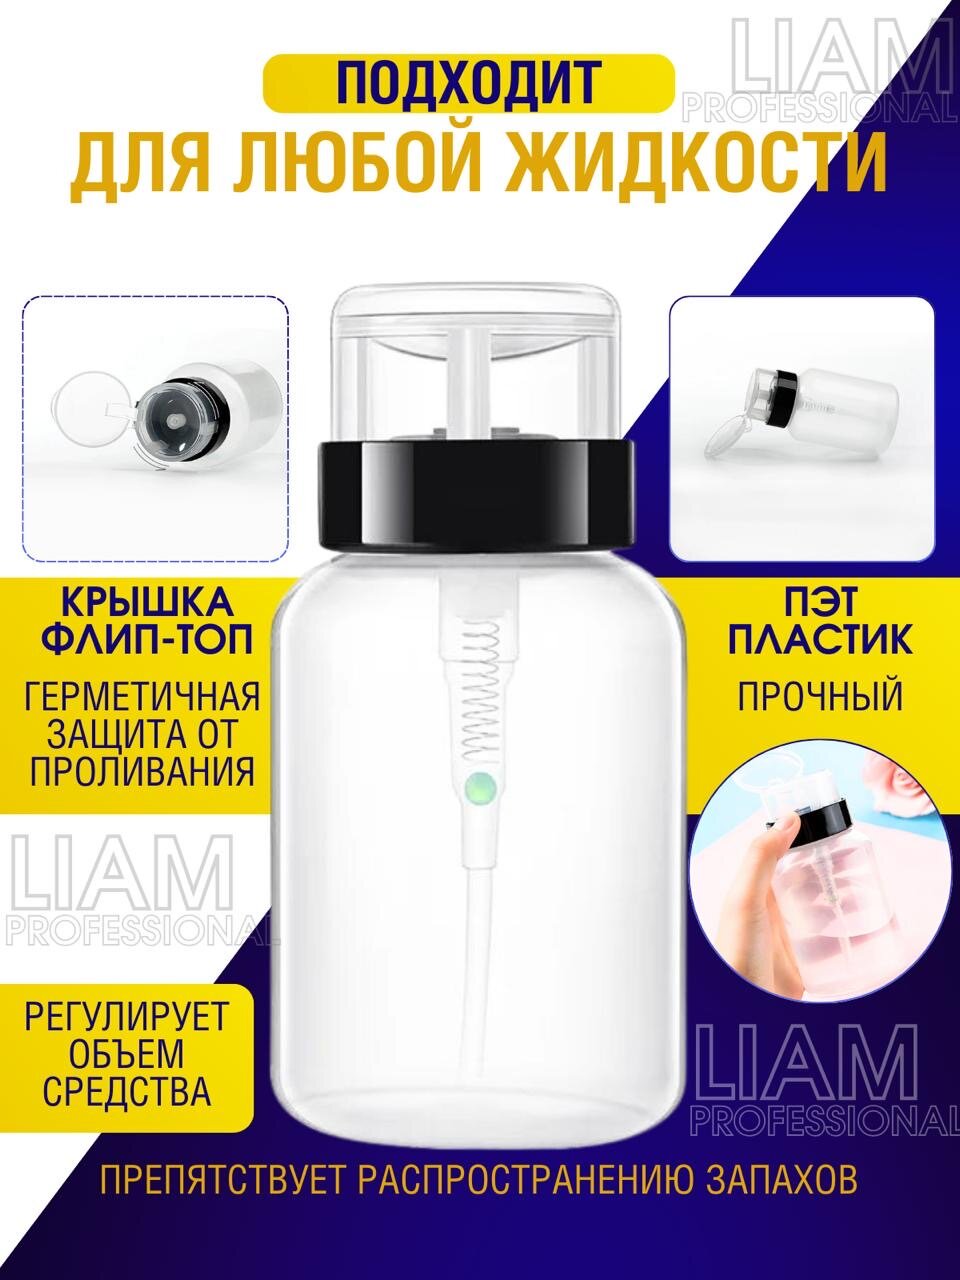 "Liam Professional" - косметический флакон с дозатором для удобного использования